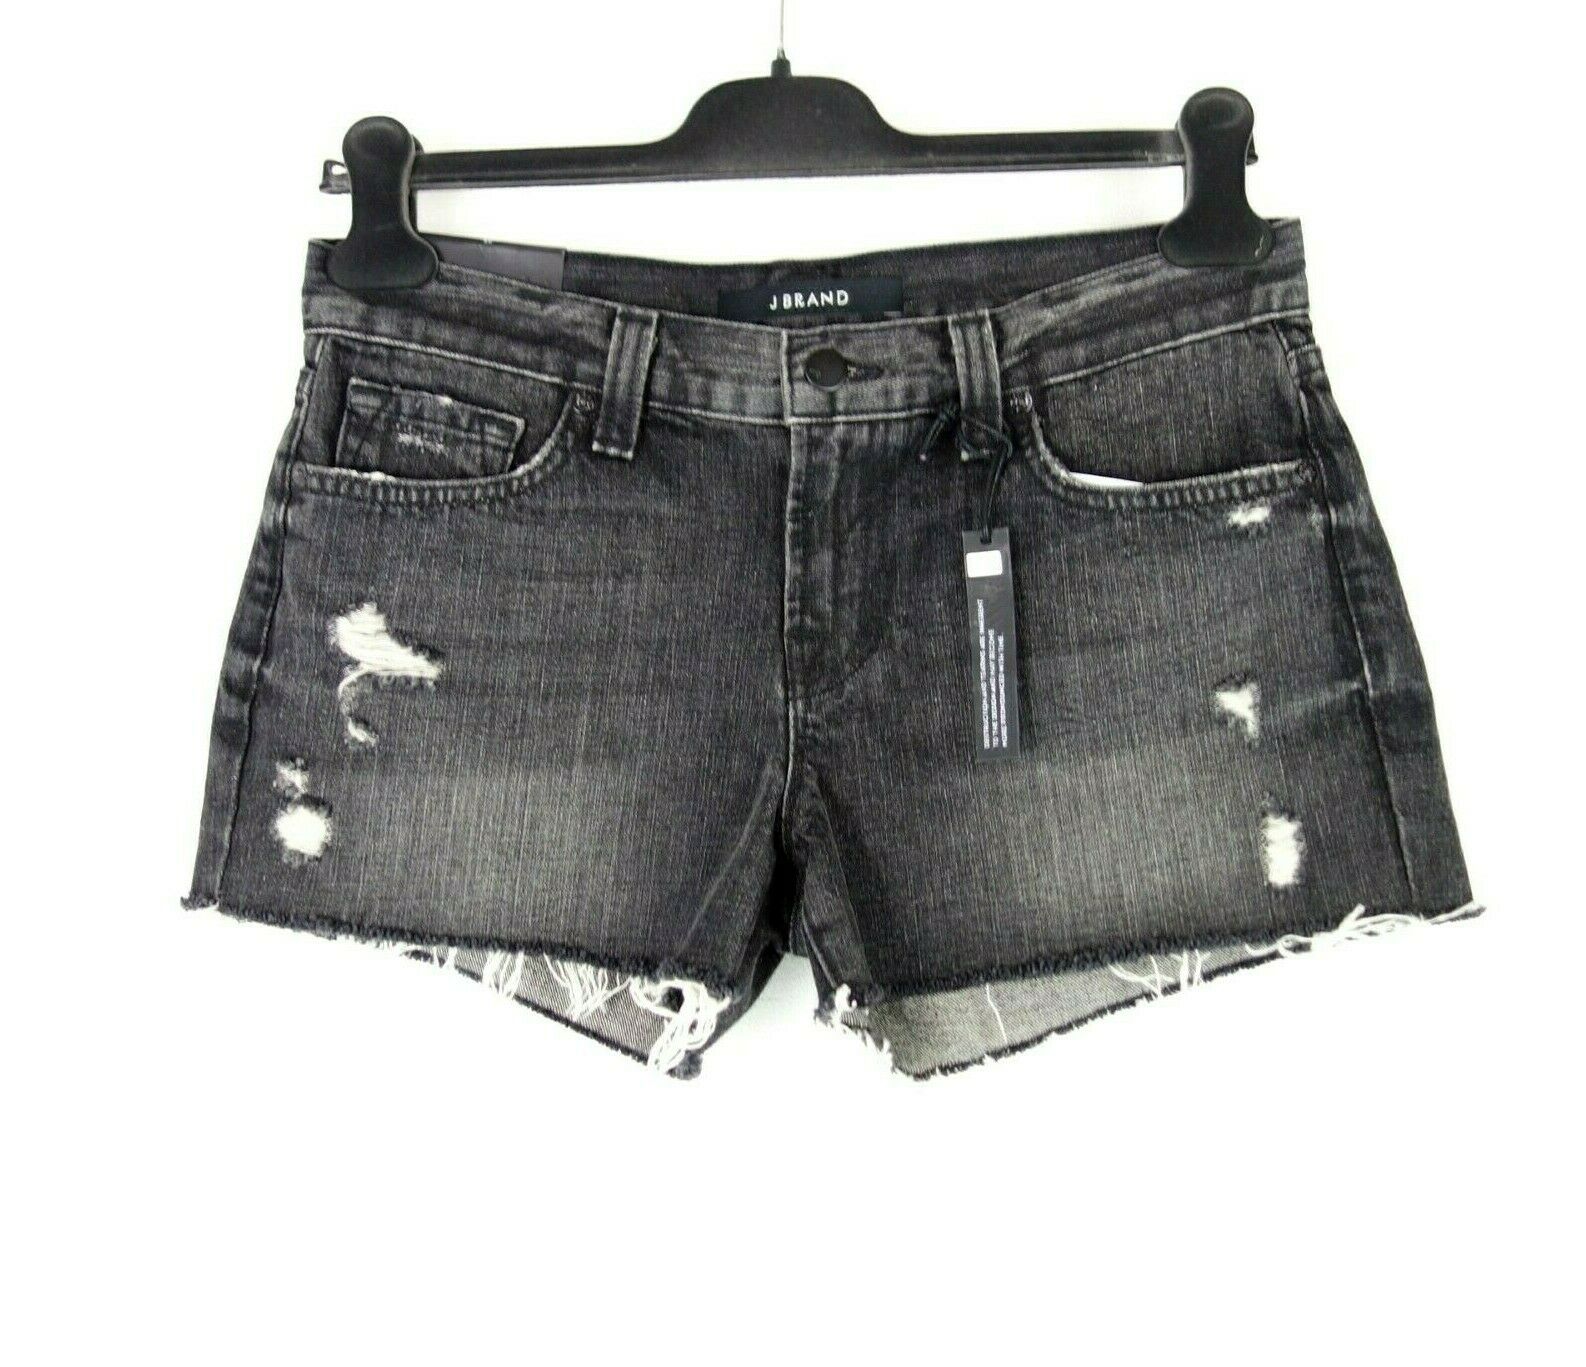 J Brand Damen Short Kurze Hose Jeansshorts Hot Pants Cut Off Schwarz Np 189 Neu - 25